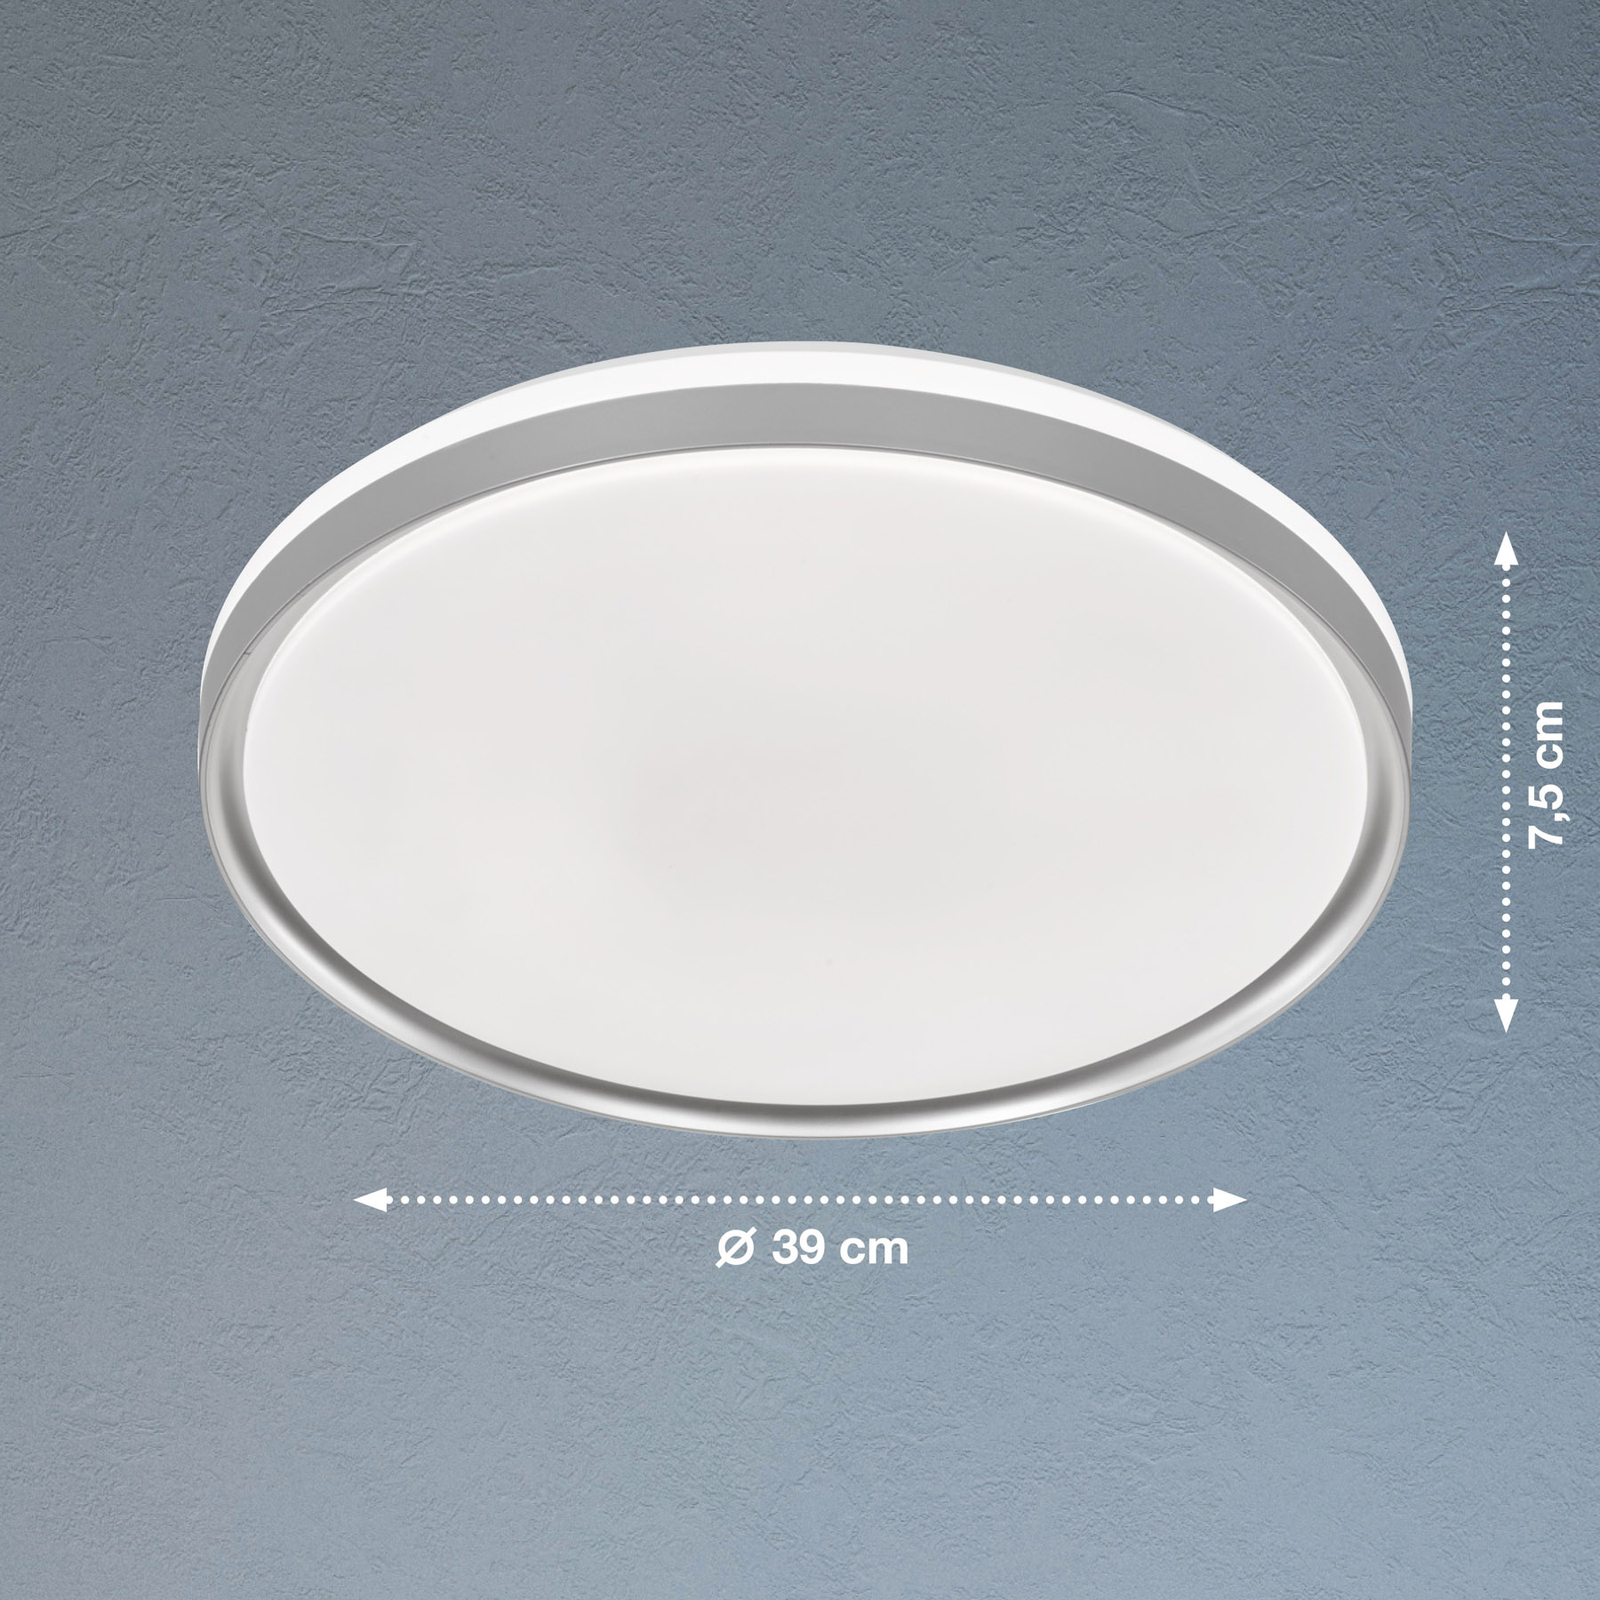 Jaso BS LED lubinis šviestuvas, Ø 39 cm, sidabrinis